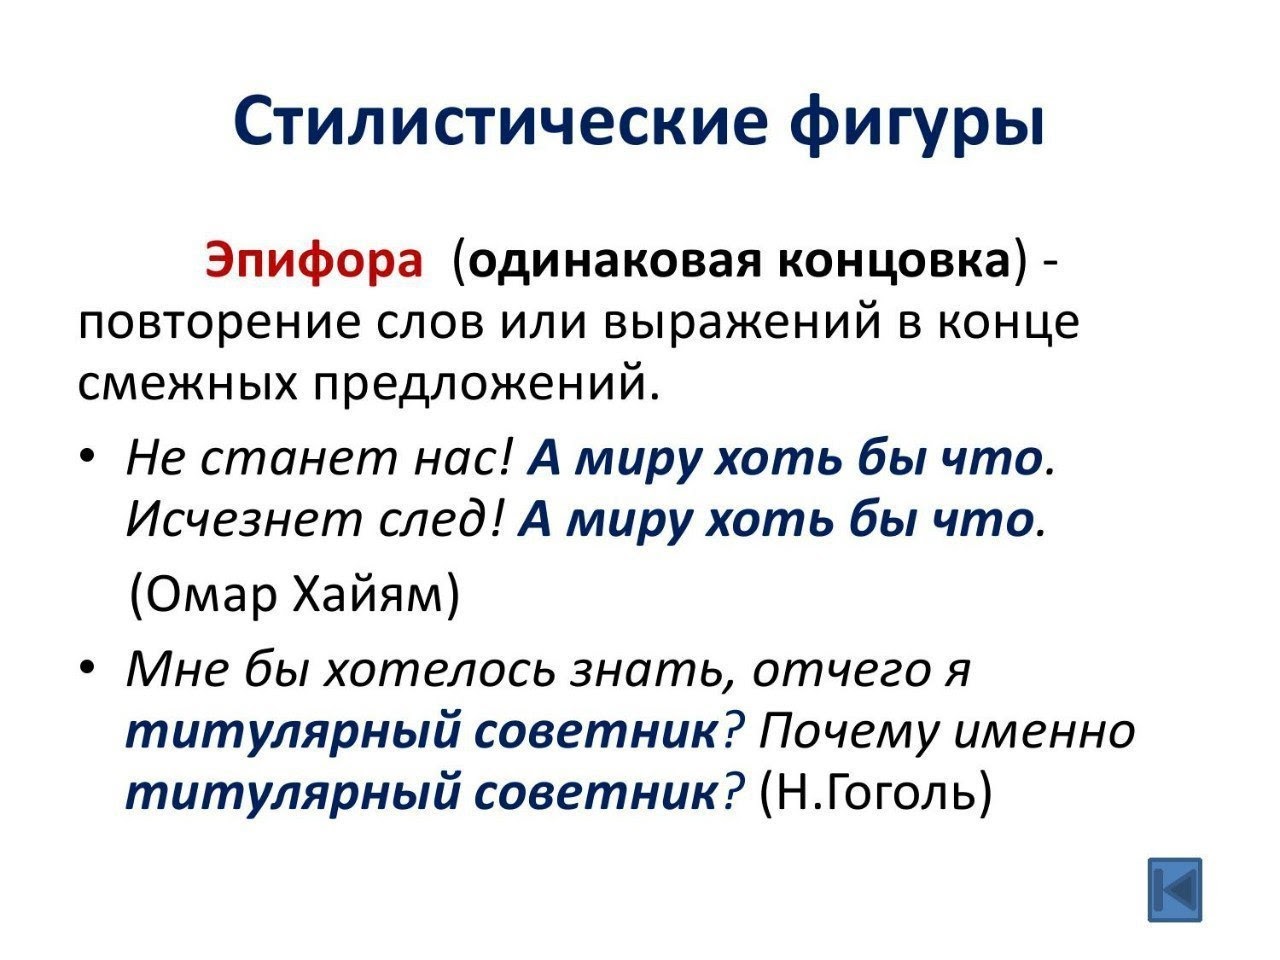 Стилистические фигуры по русскому языку эпифора